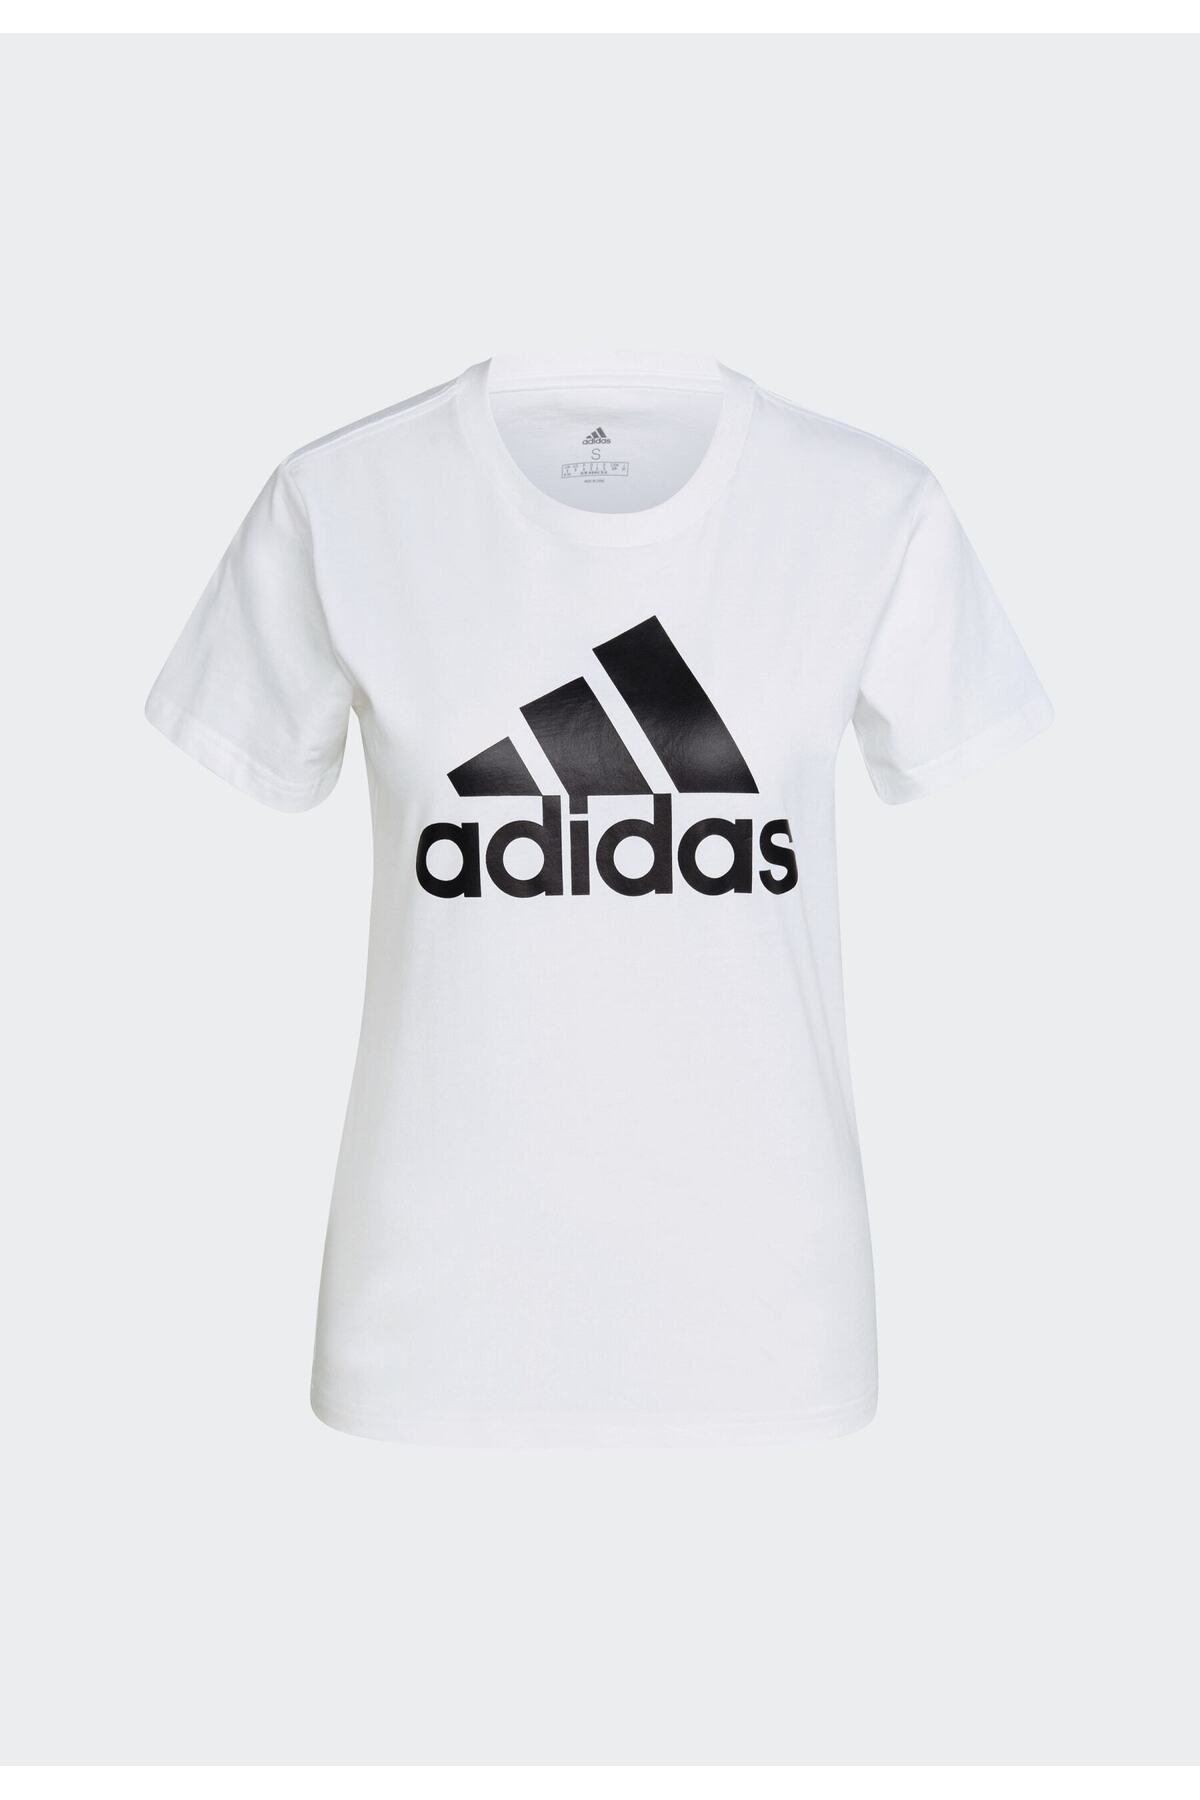 adidas adidas پیراهن تی شرت با لوگوی برجسته - مدل GL0649